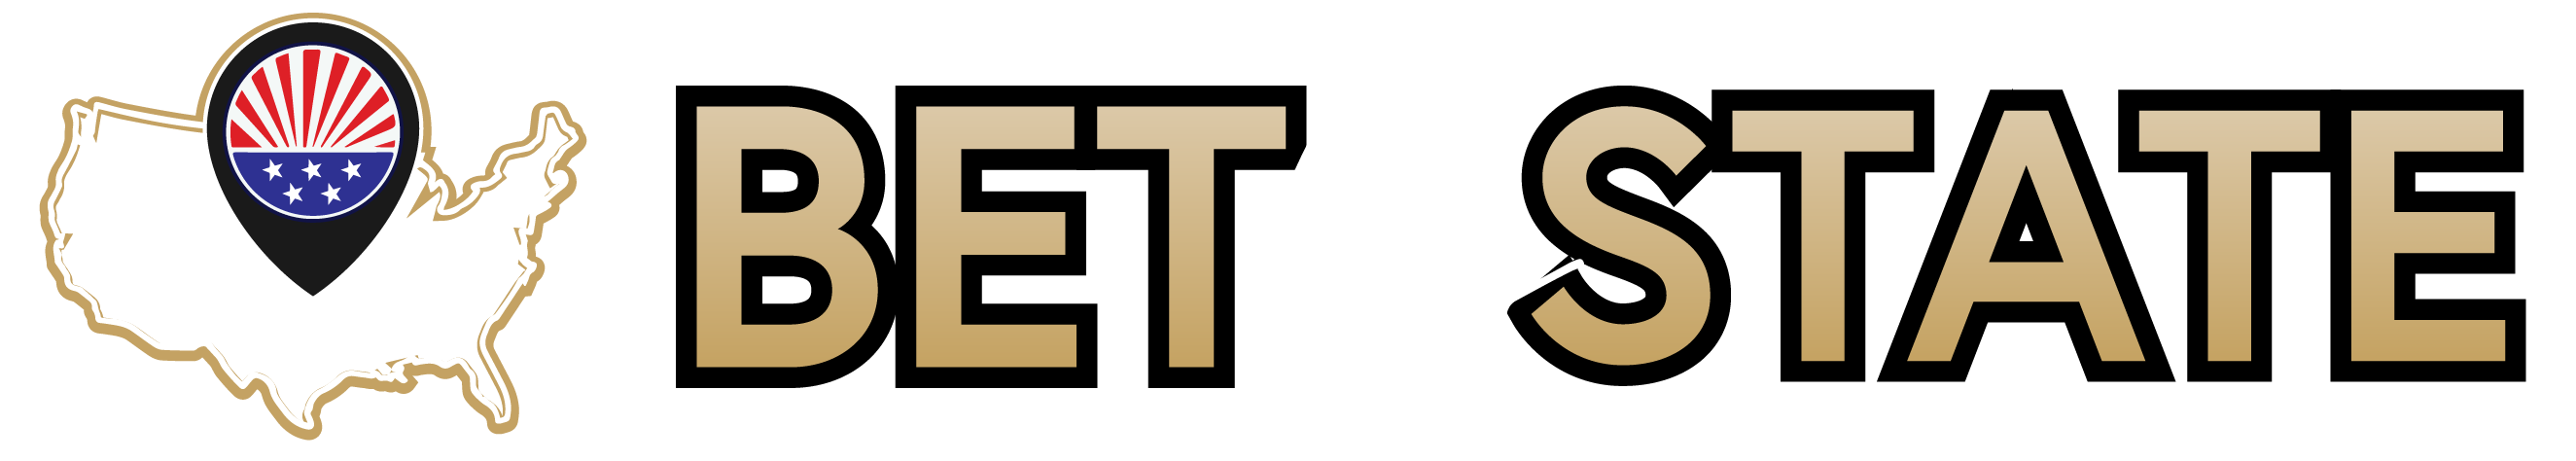 BetByState logo